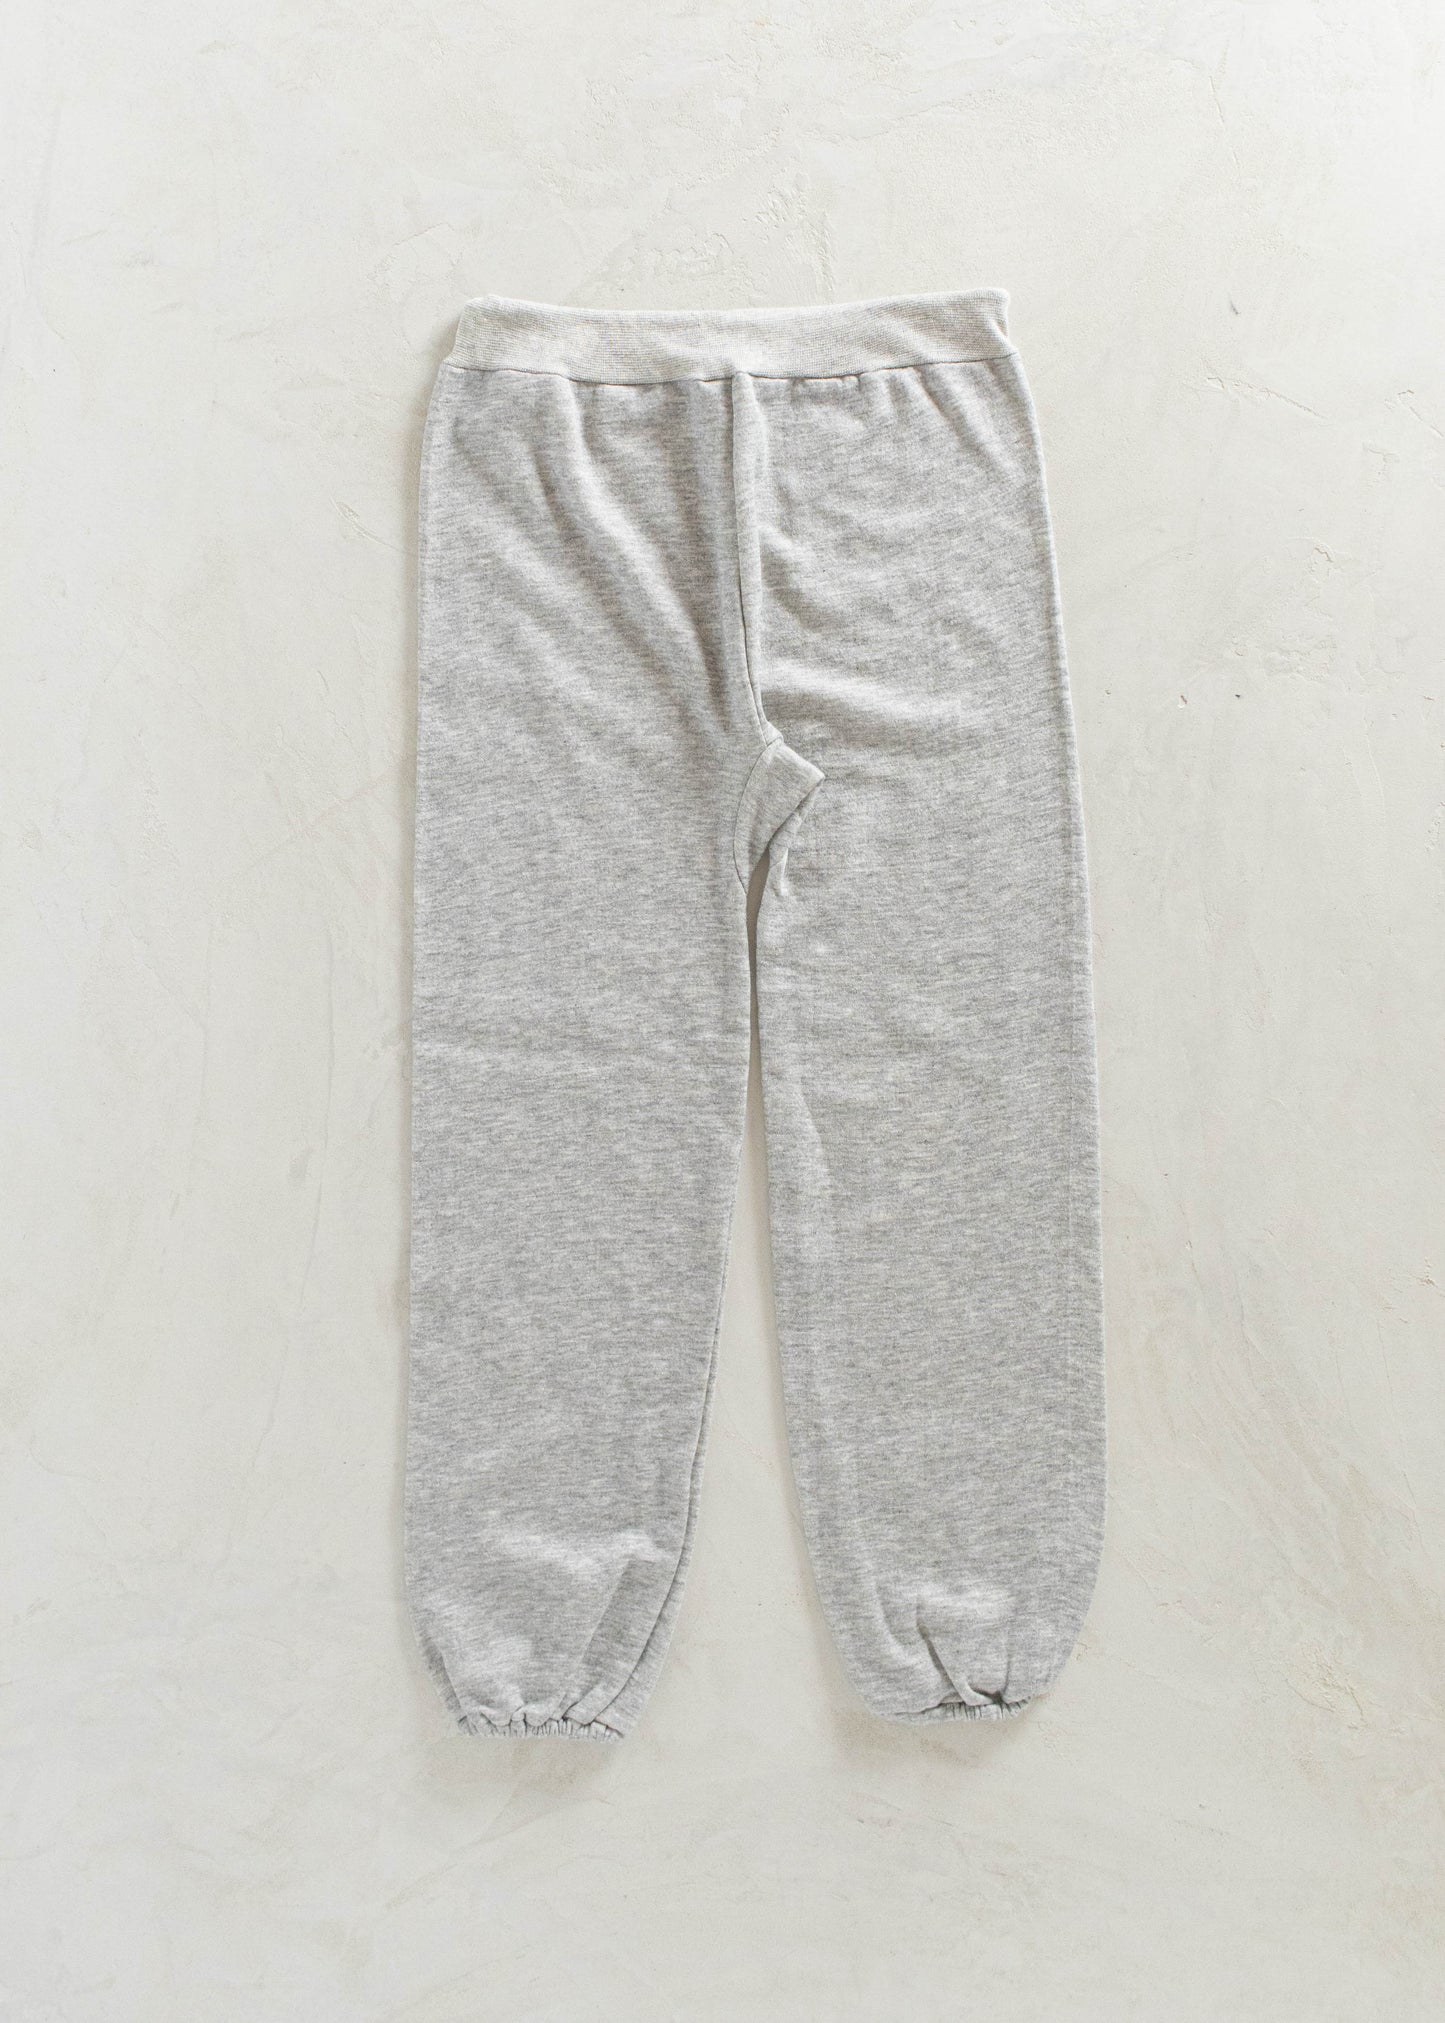 Vintage Challenger Sweatpants Size M/L